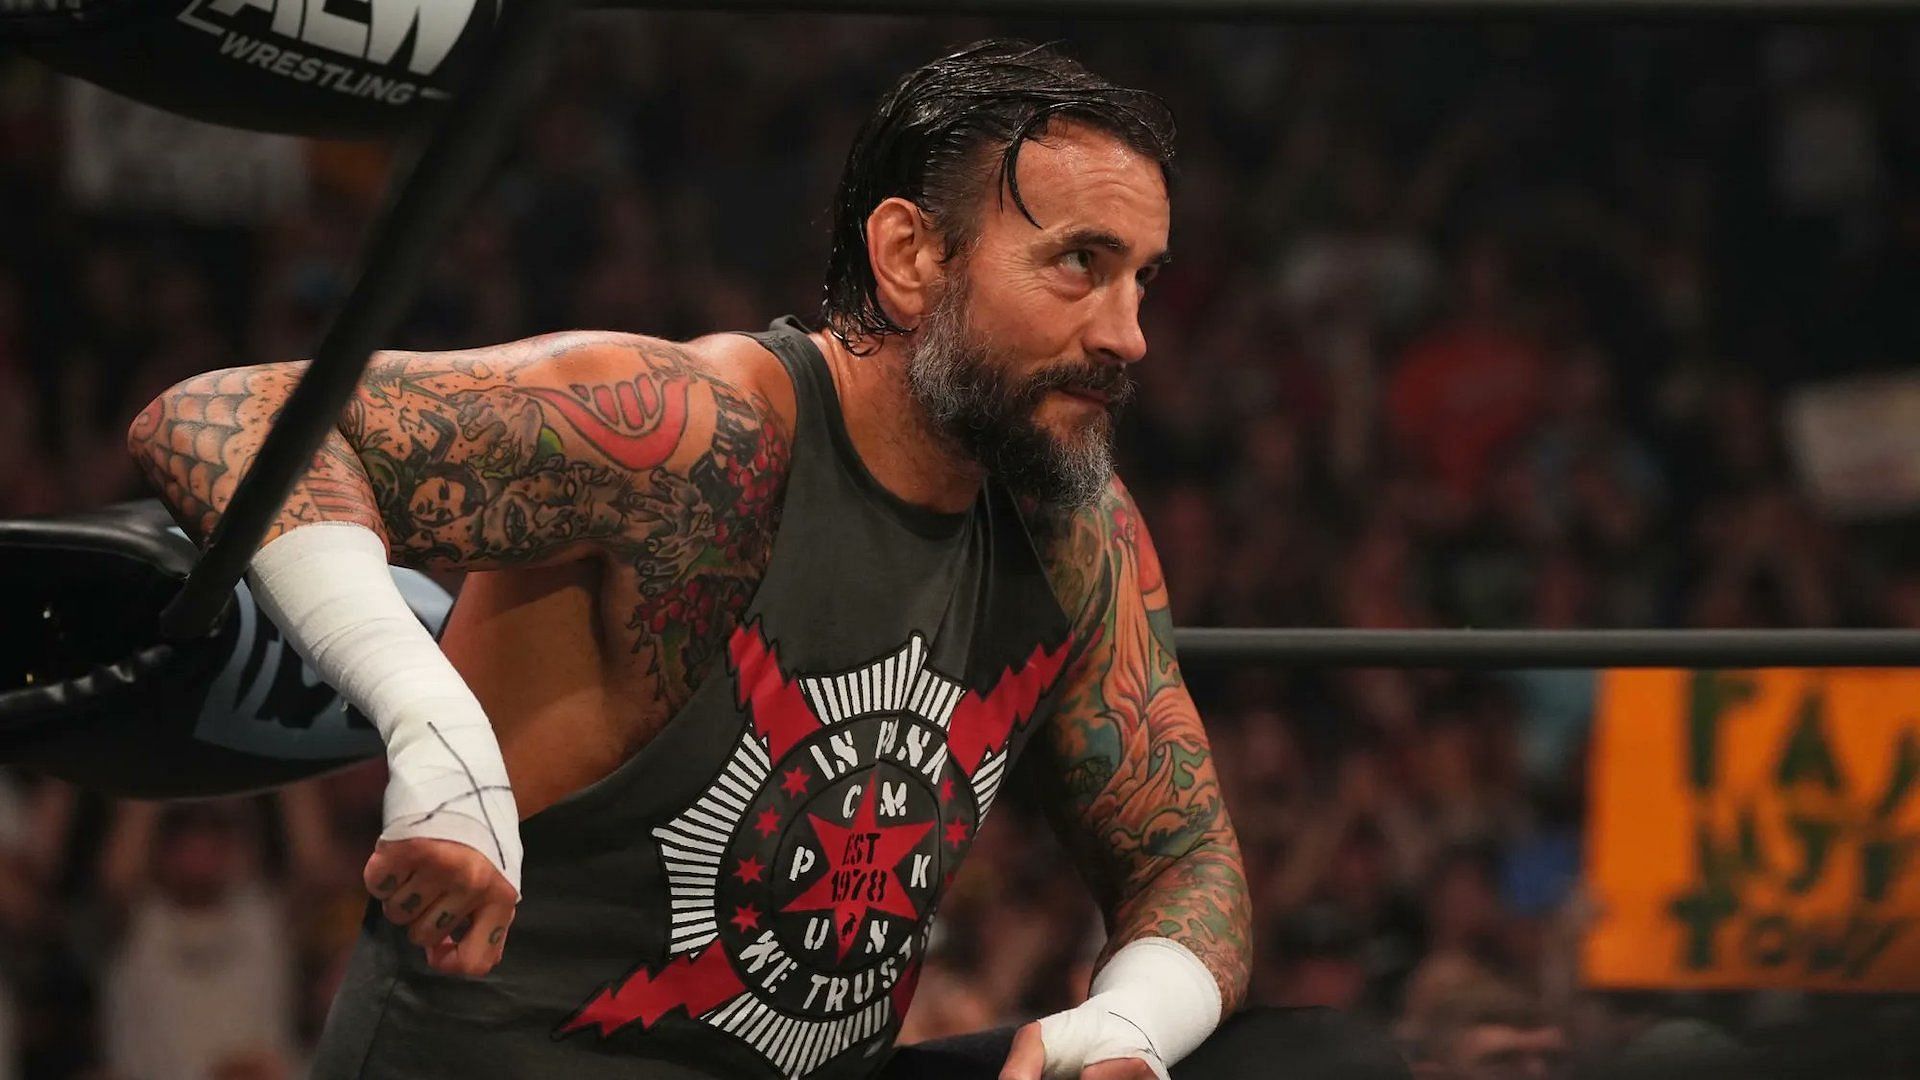 CM Punk was backstage at WWE RAW last week